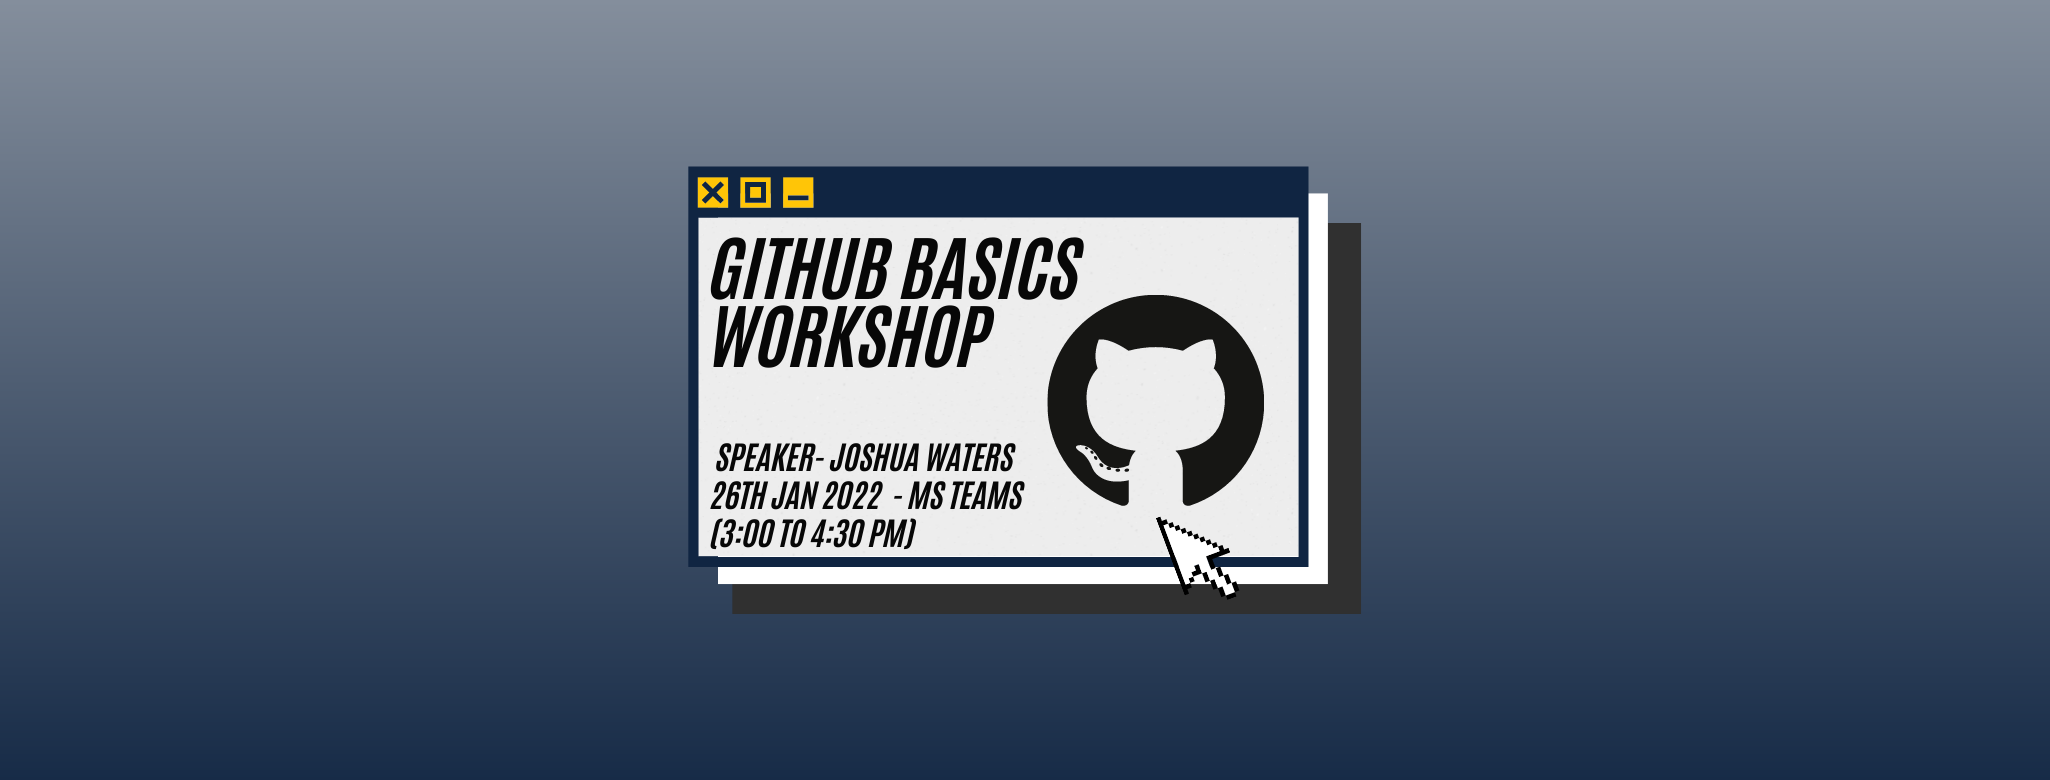 Github Basics Workshop Banner